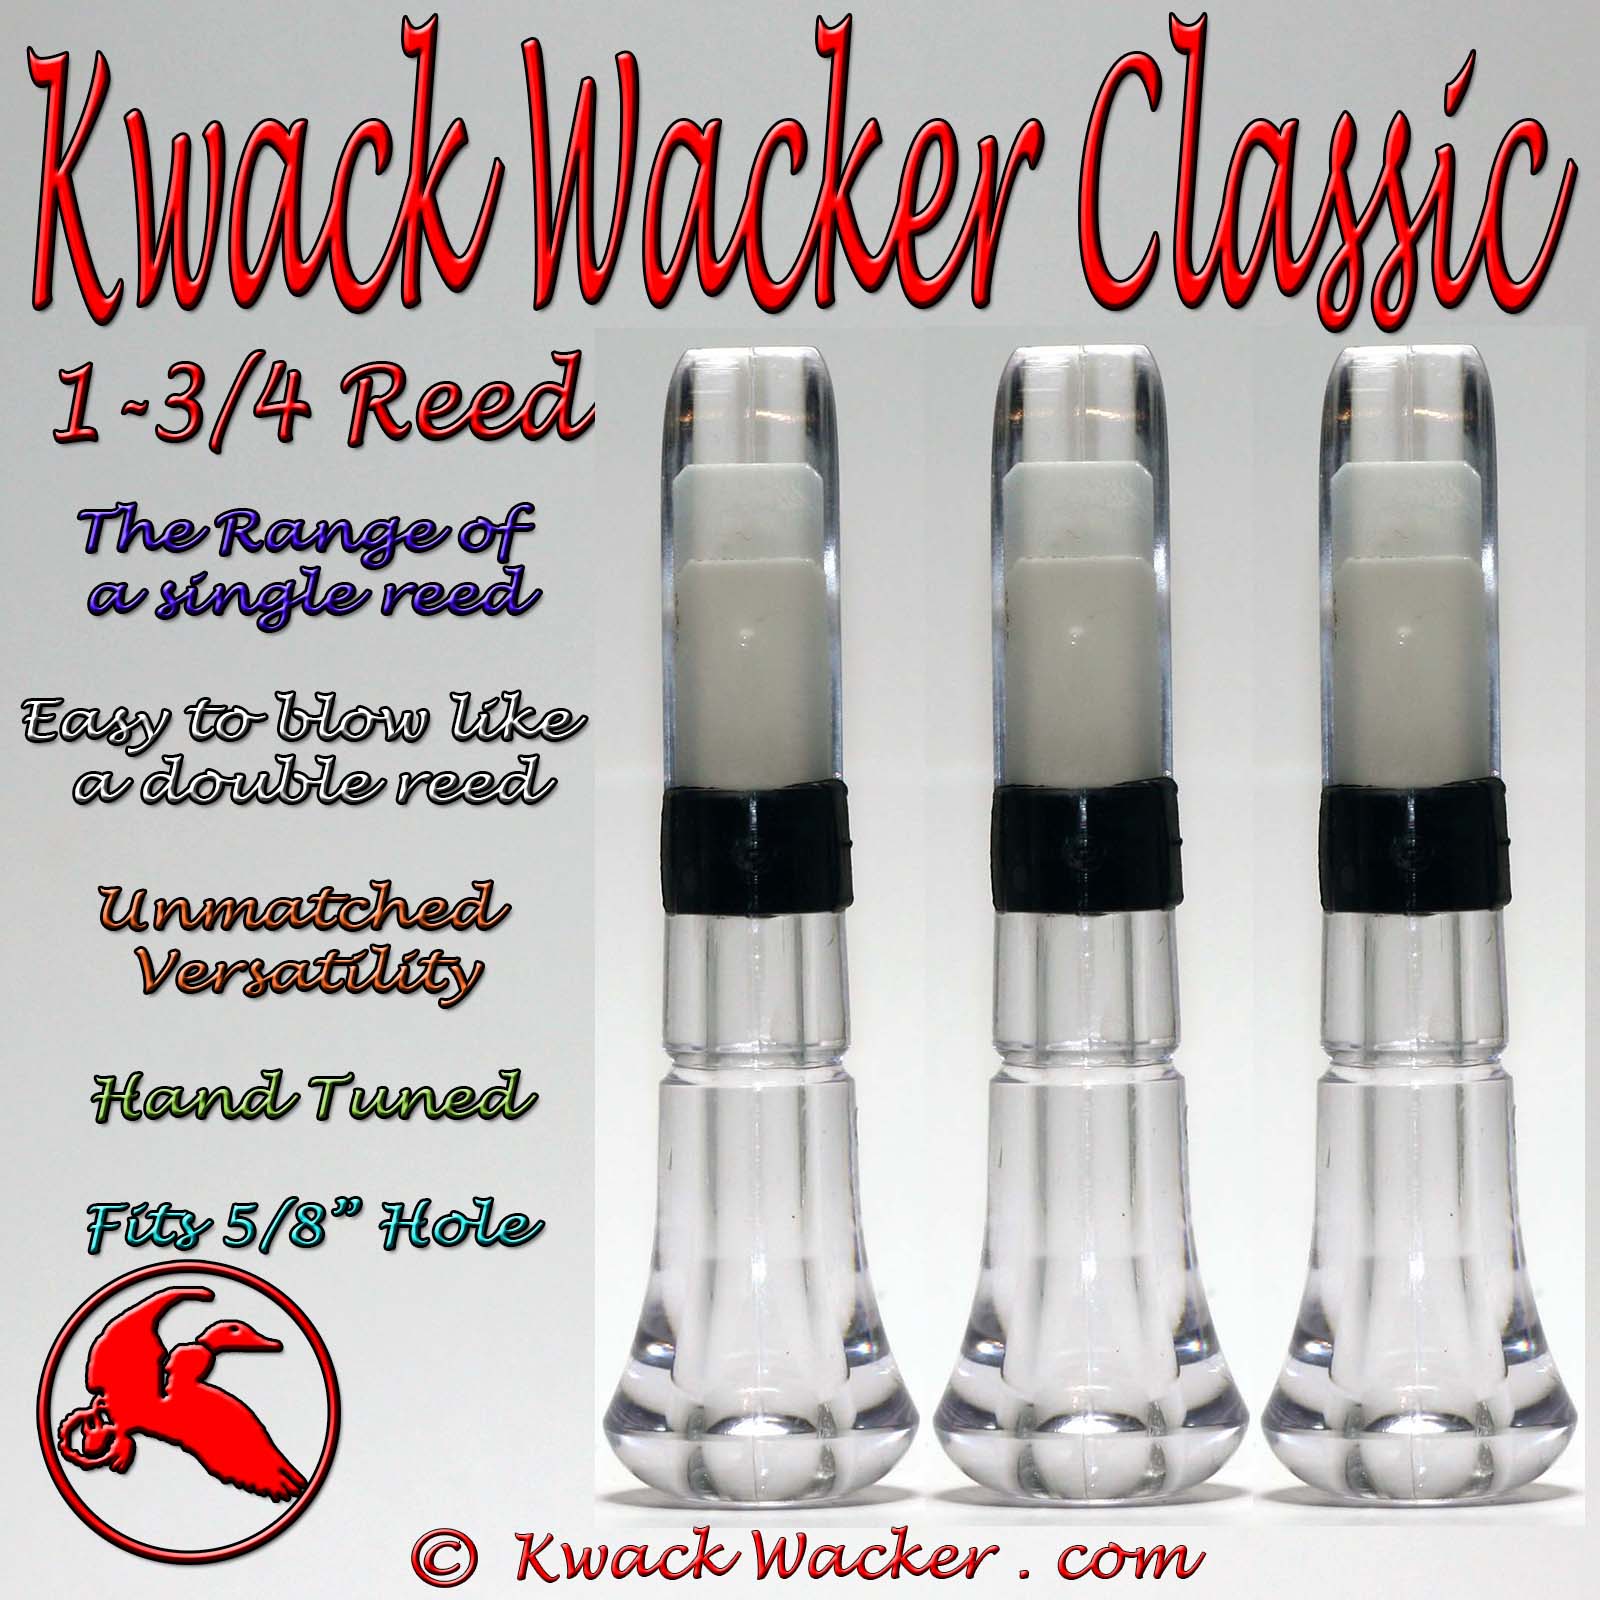 Duck call Inserts Kwack Wacker Classic 